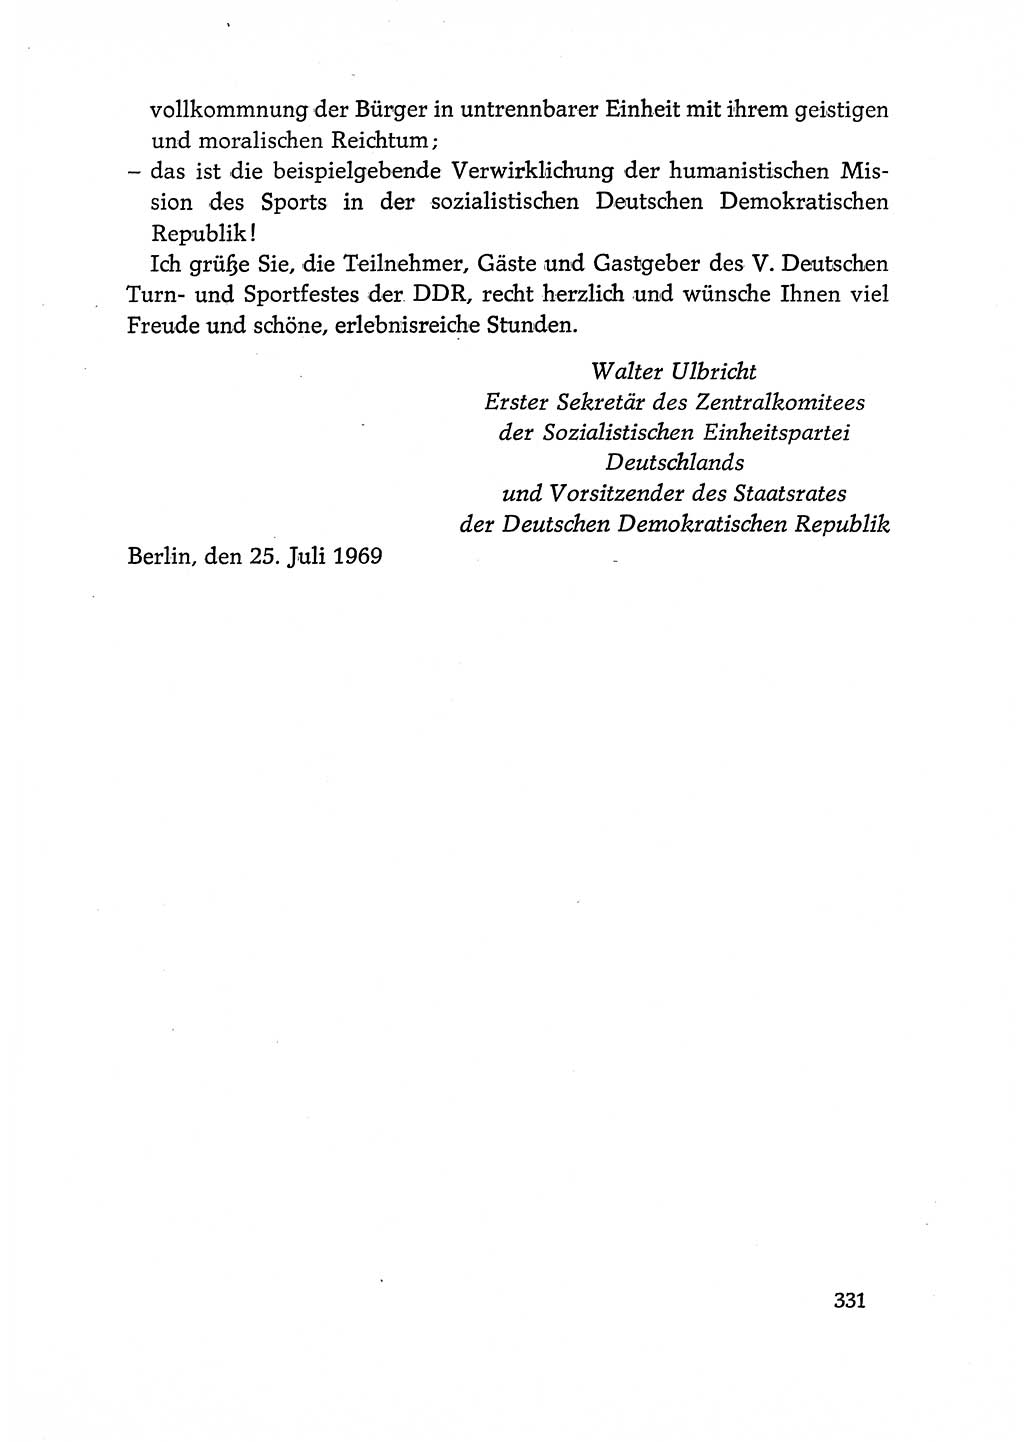 Dokumente der Sozialistischen Einheitspartei Deutschlands (SED) [Deutsche Demokratische Republik (DDR)] 1968-1969, Seite 331 (Dok. SED DDR 1968-1969, S. 331)